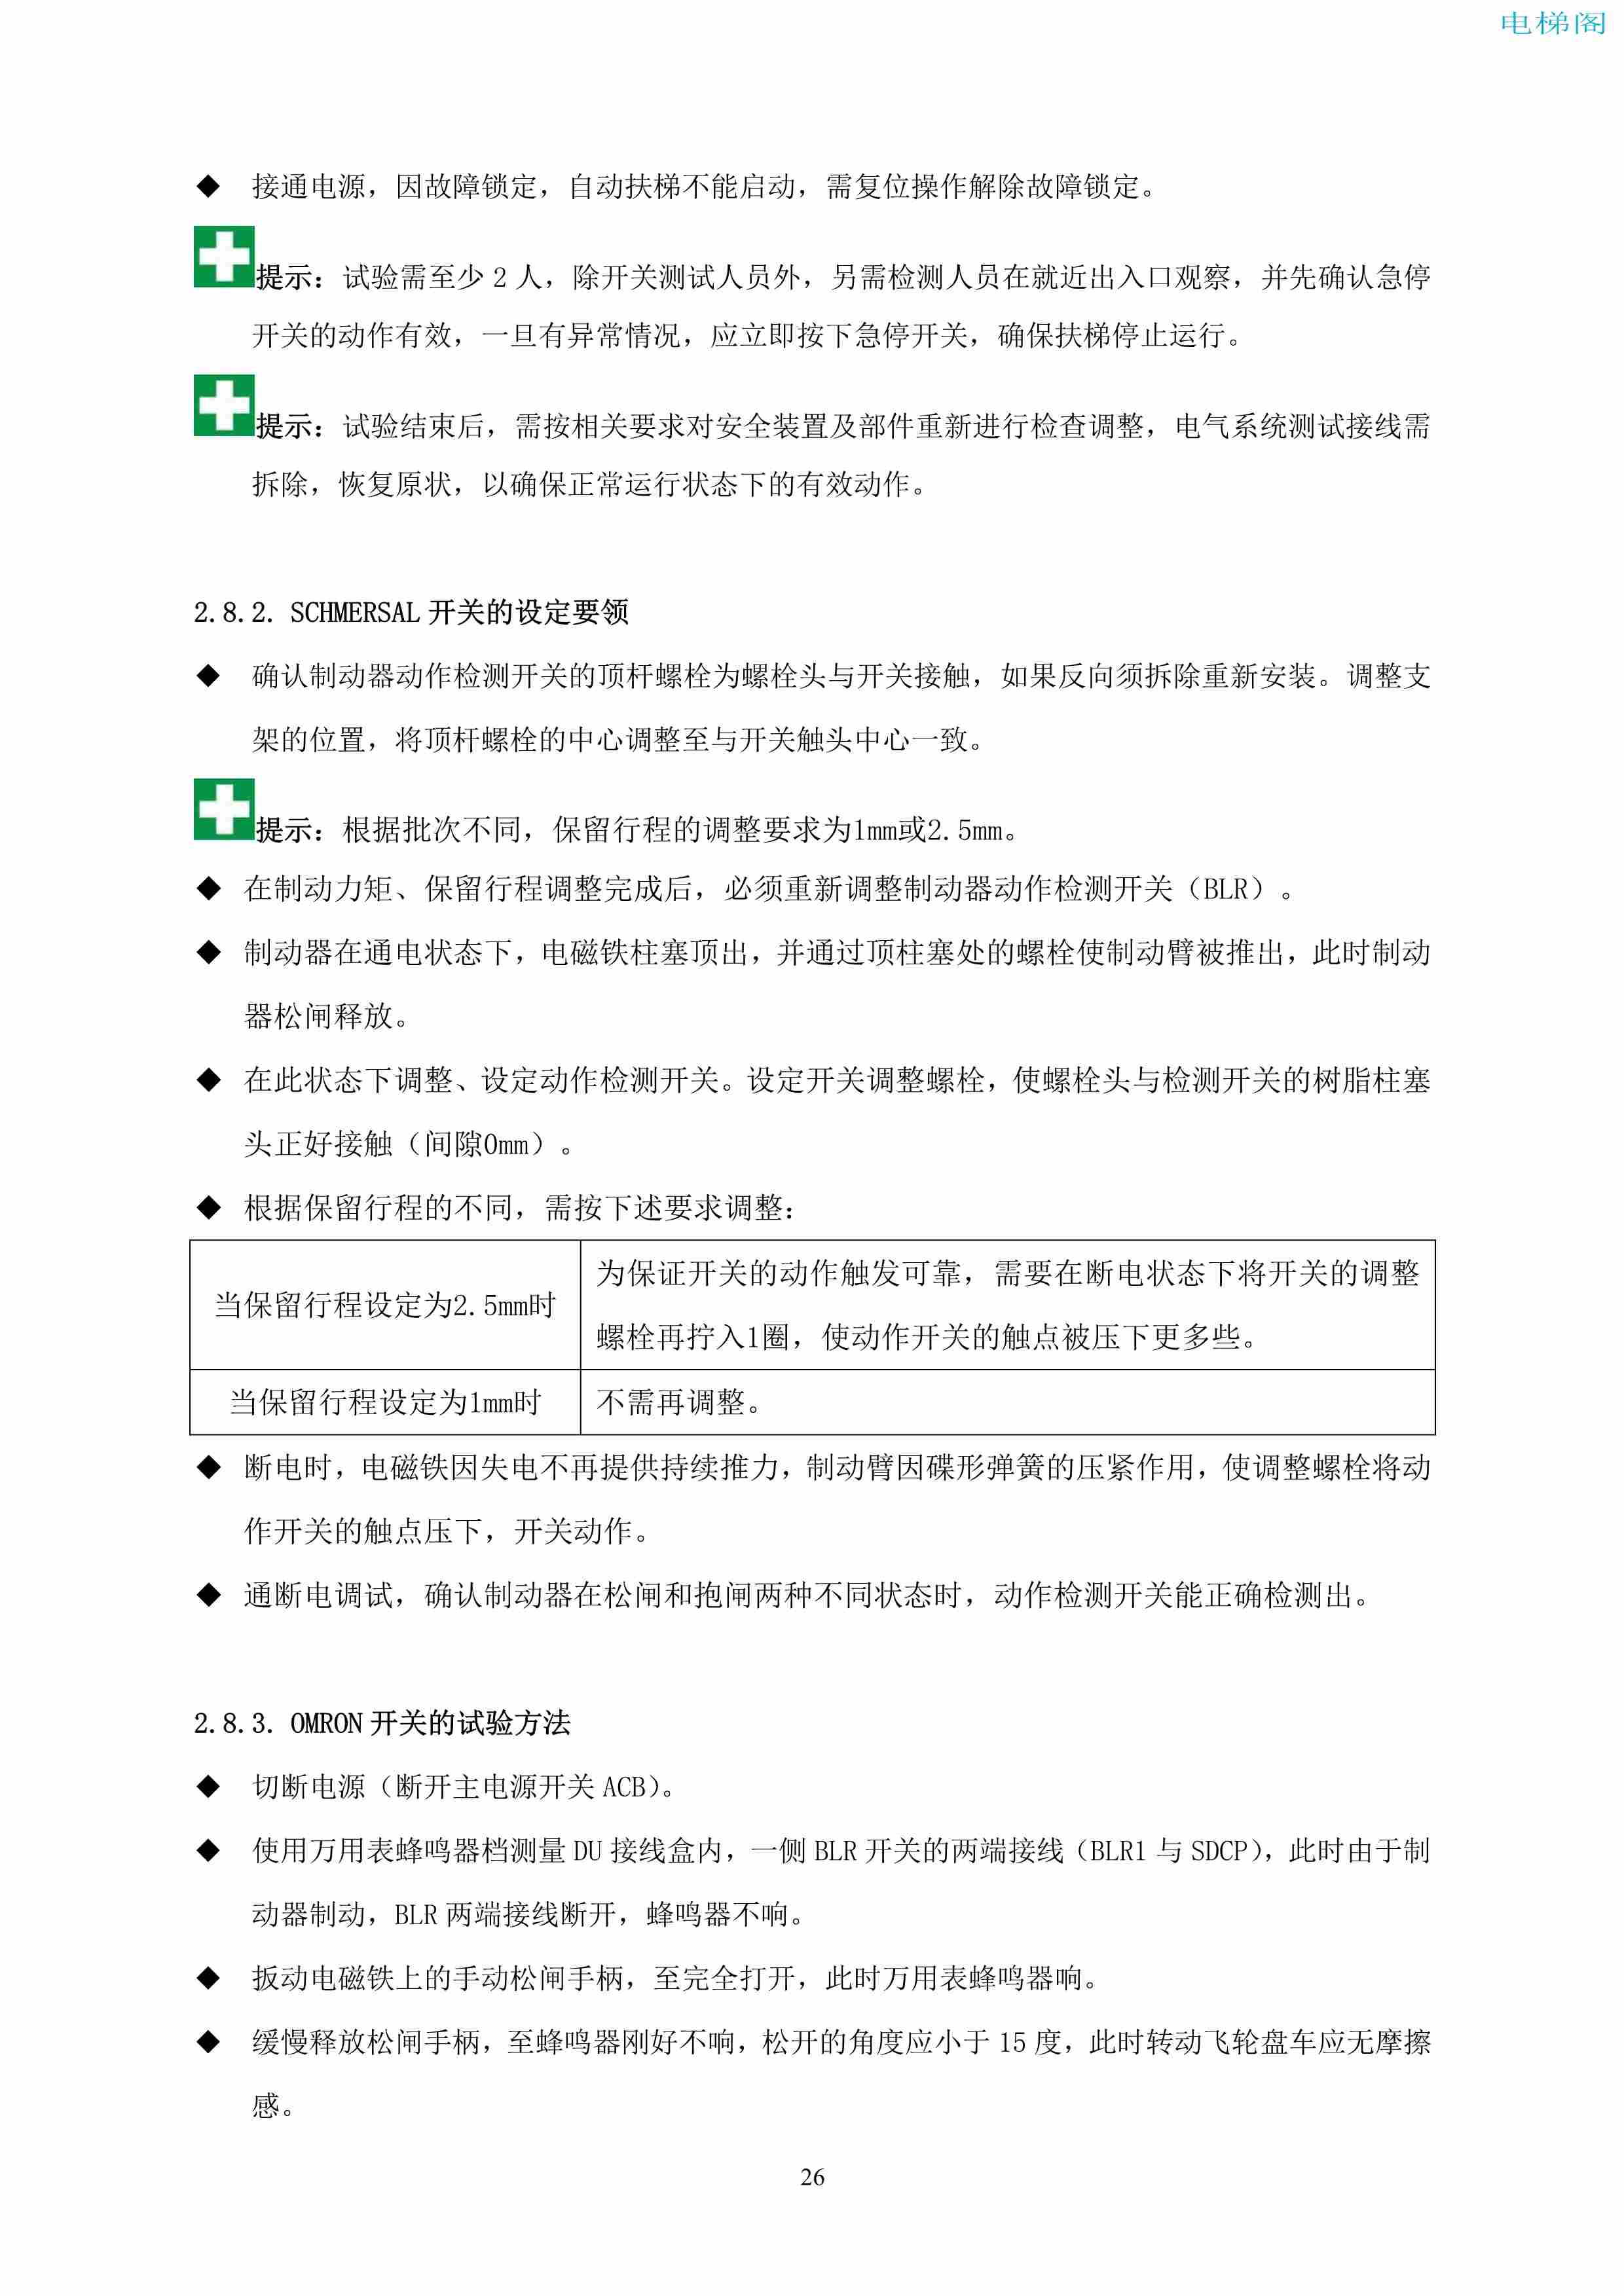 上海三菱电梯有限公司自动扶梯制动器维护作业要领汇编_27.jpg